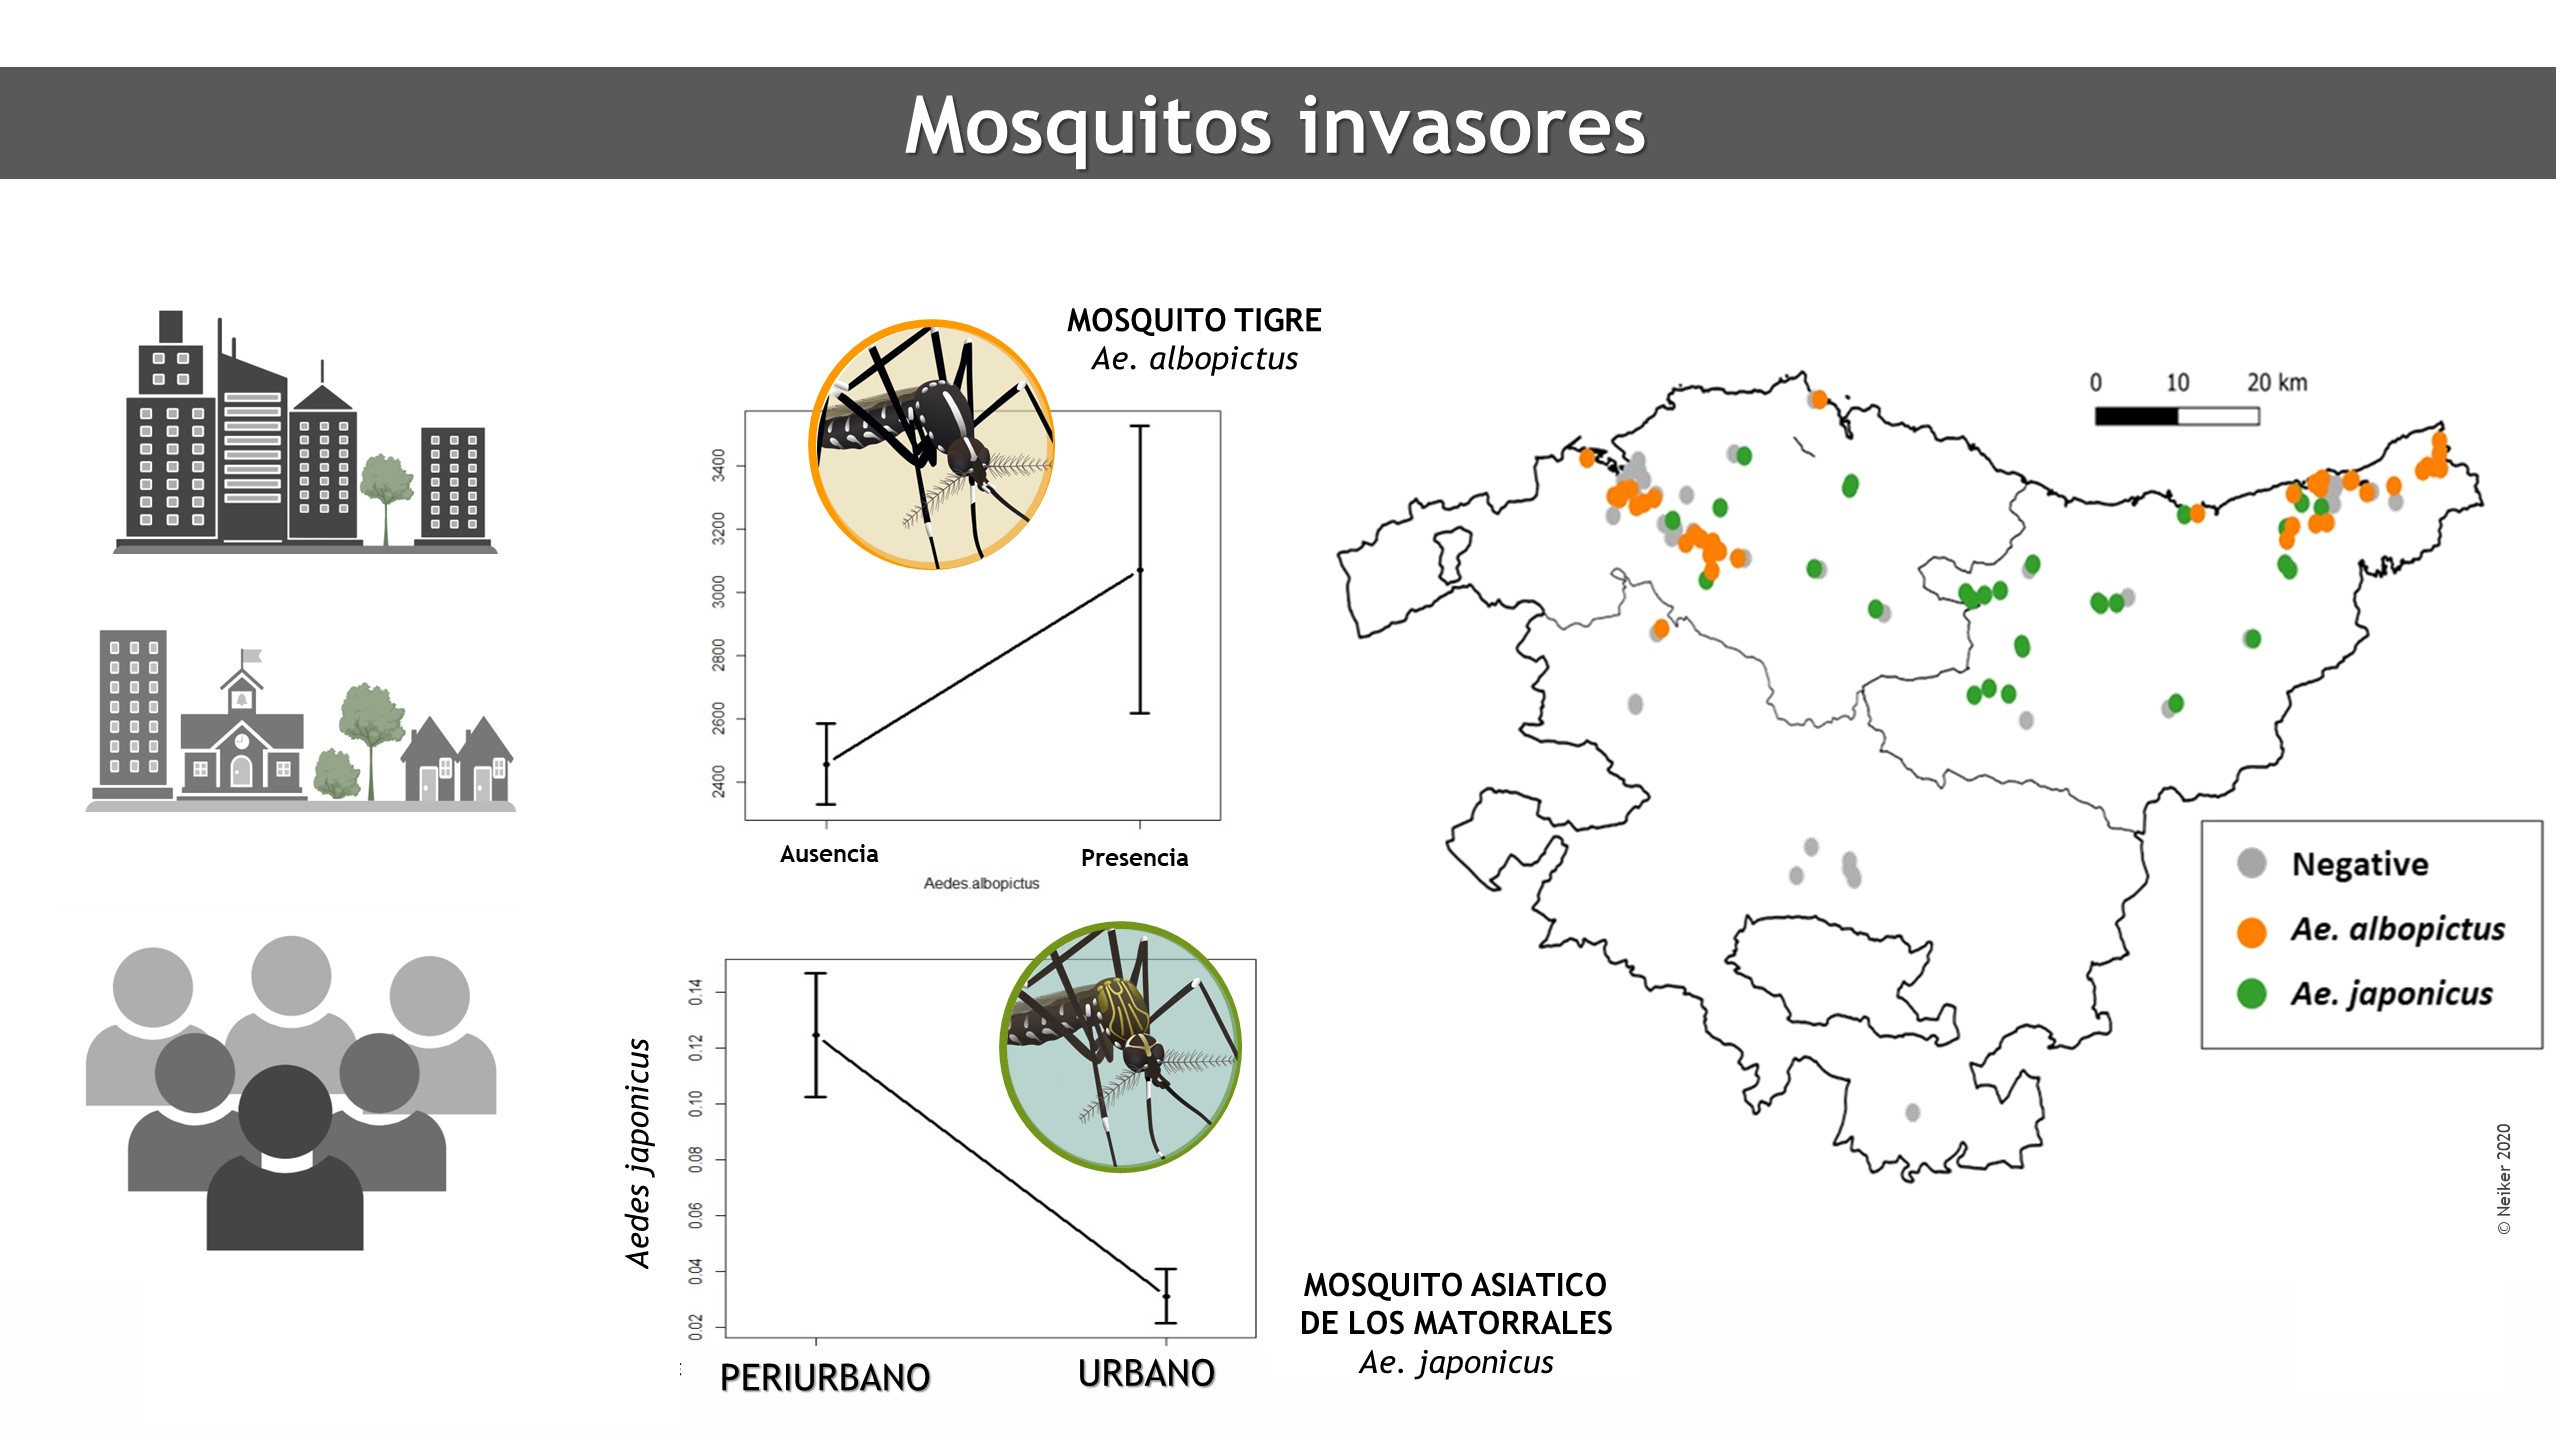 Mosquitos Aedes invasores en el gradiente urbano-periurbano en la CAPV: Evidencias de la amplia distribución de Aedes japonicus